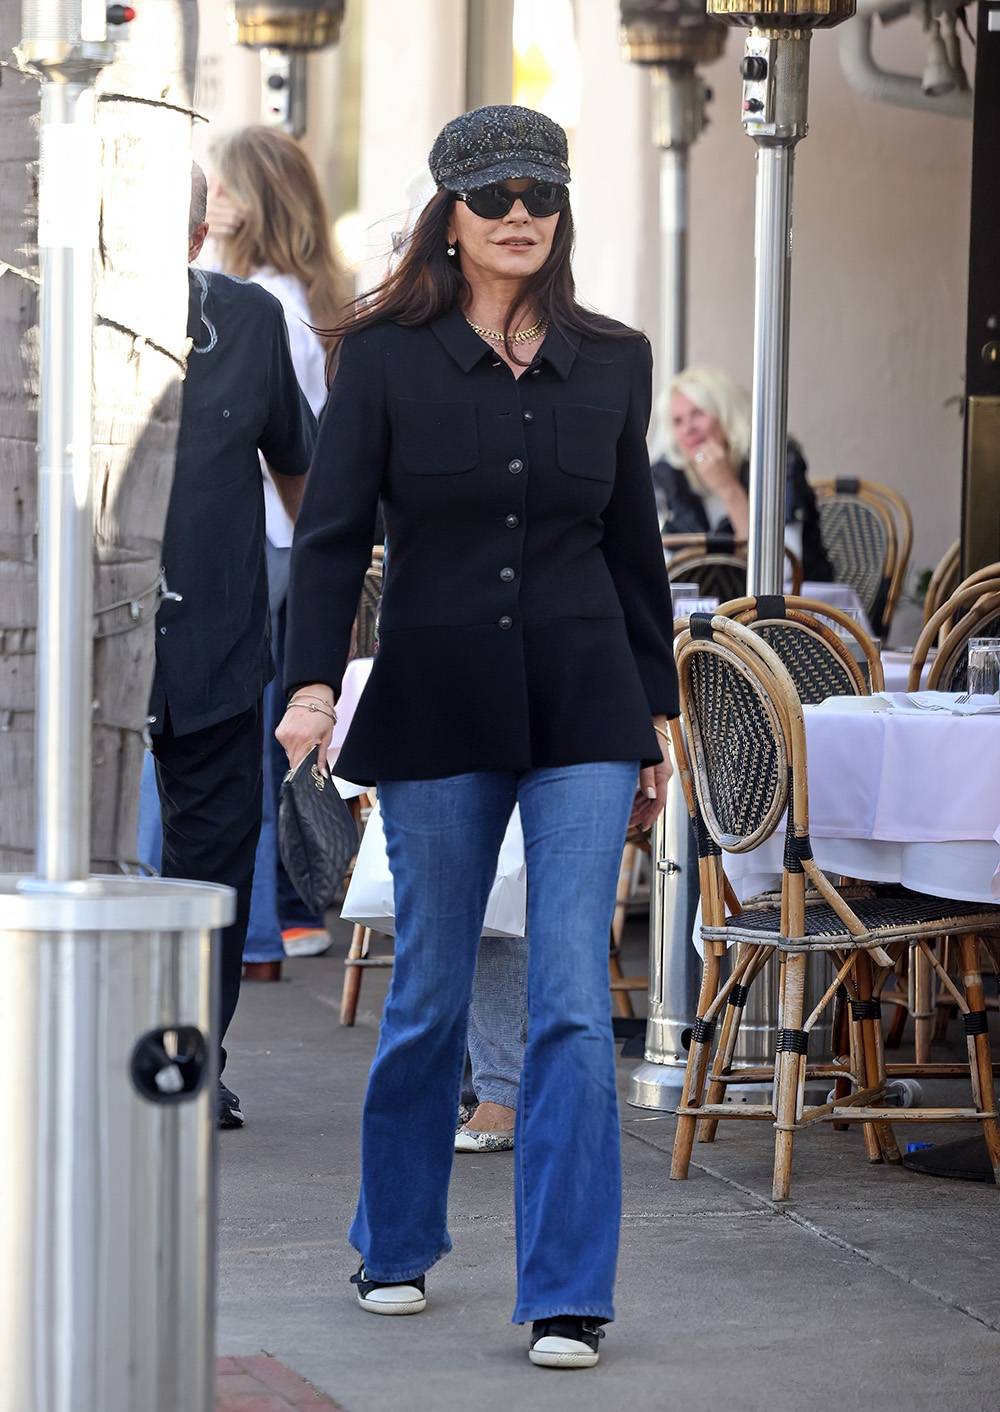 Wielki powrót dzwonów. Te niełatwe dla sylwetki jeansy damskie Catherine Zeta-Jones stylizuje sięgając po sprytne rozwiązania. Fot. East News